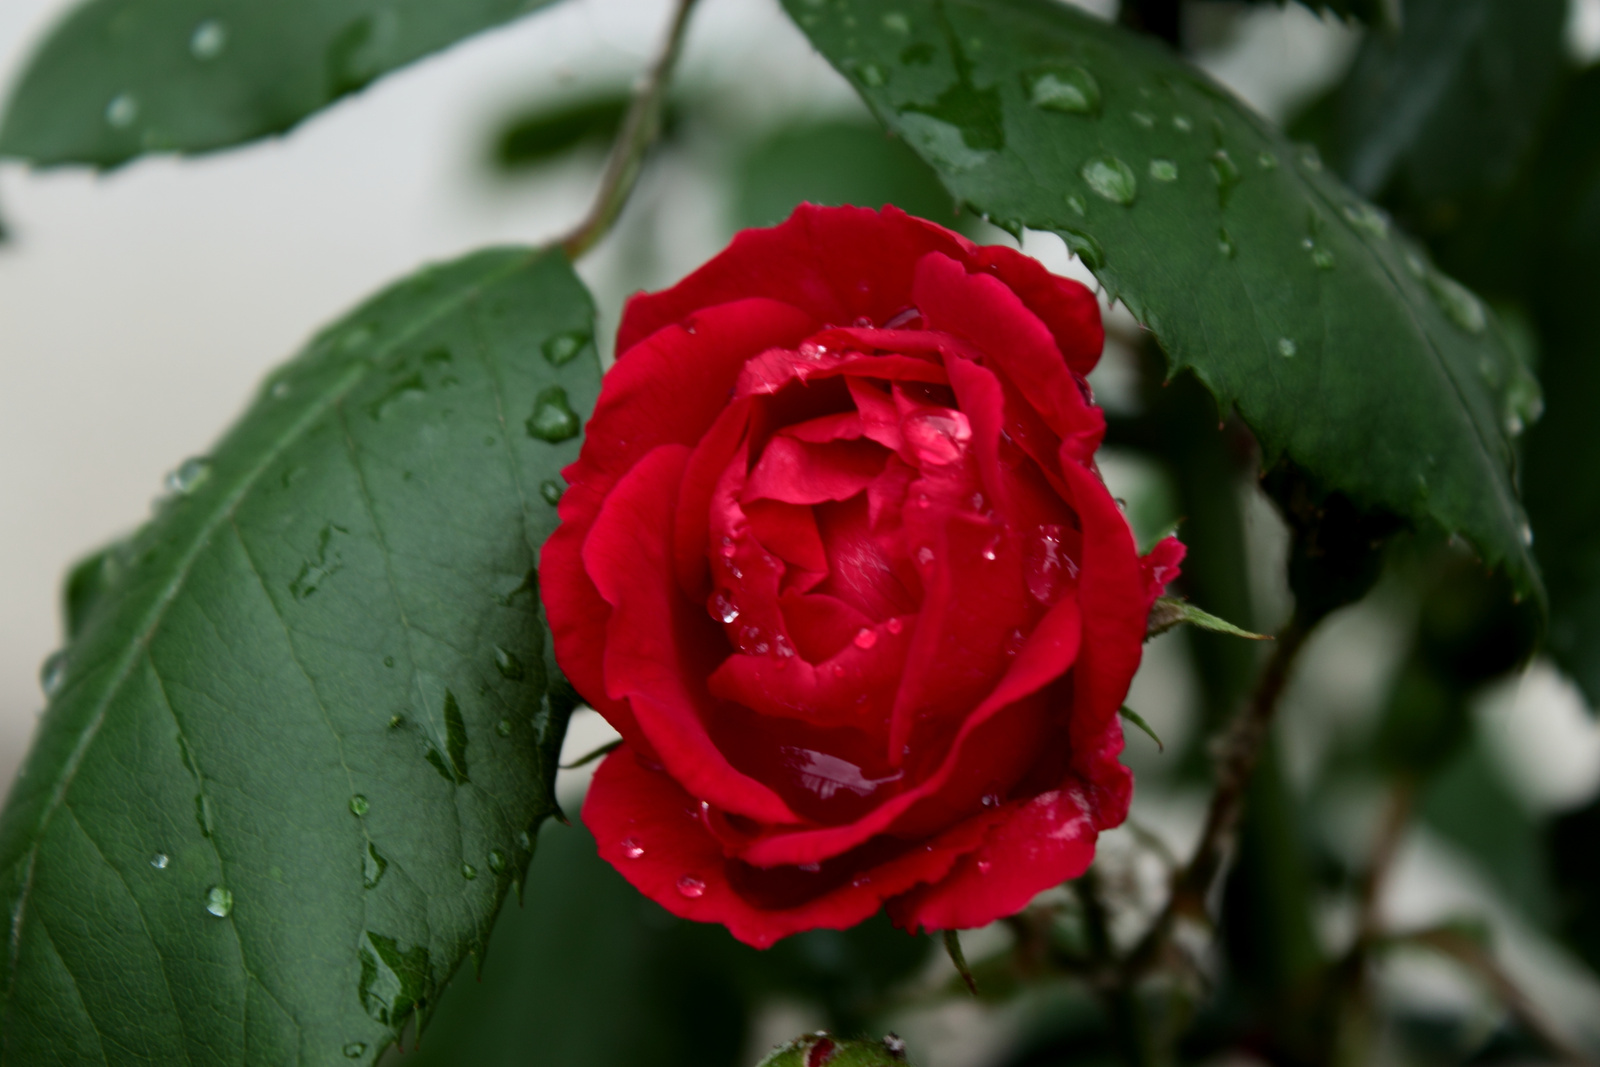 Vörös rózsa eső után